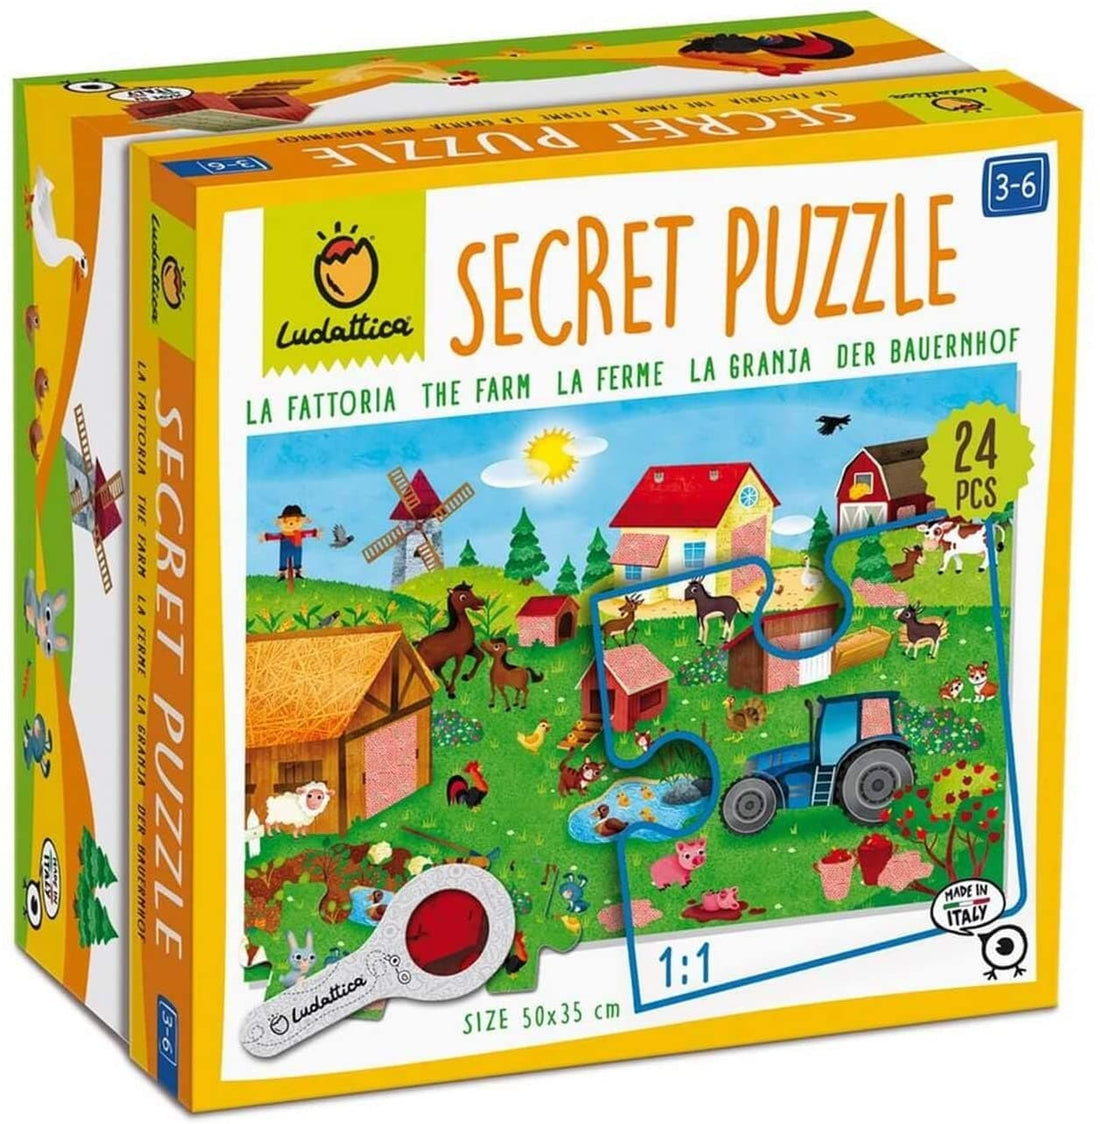 24 Piece Puzzle Secret Puzzle: The Farm